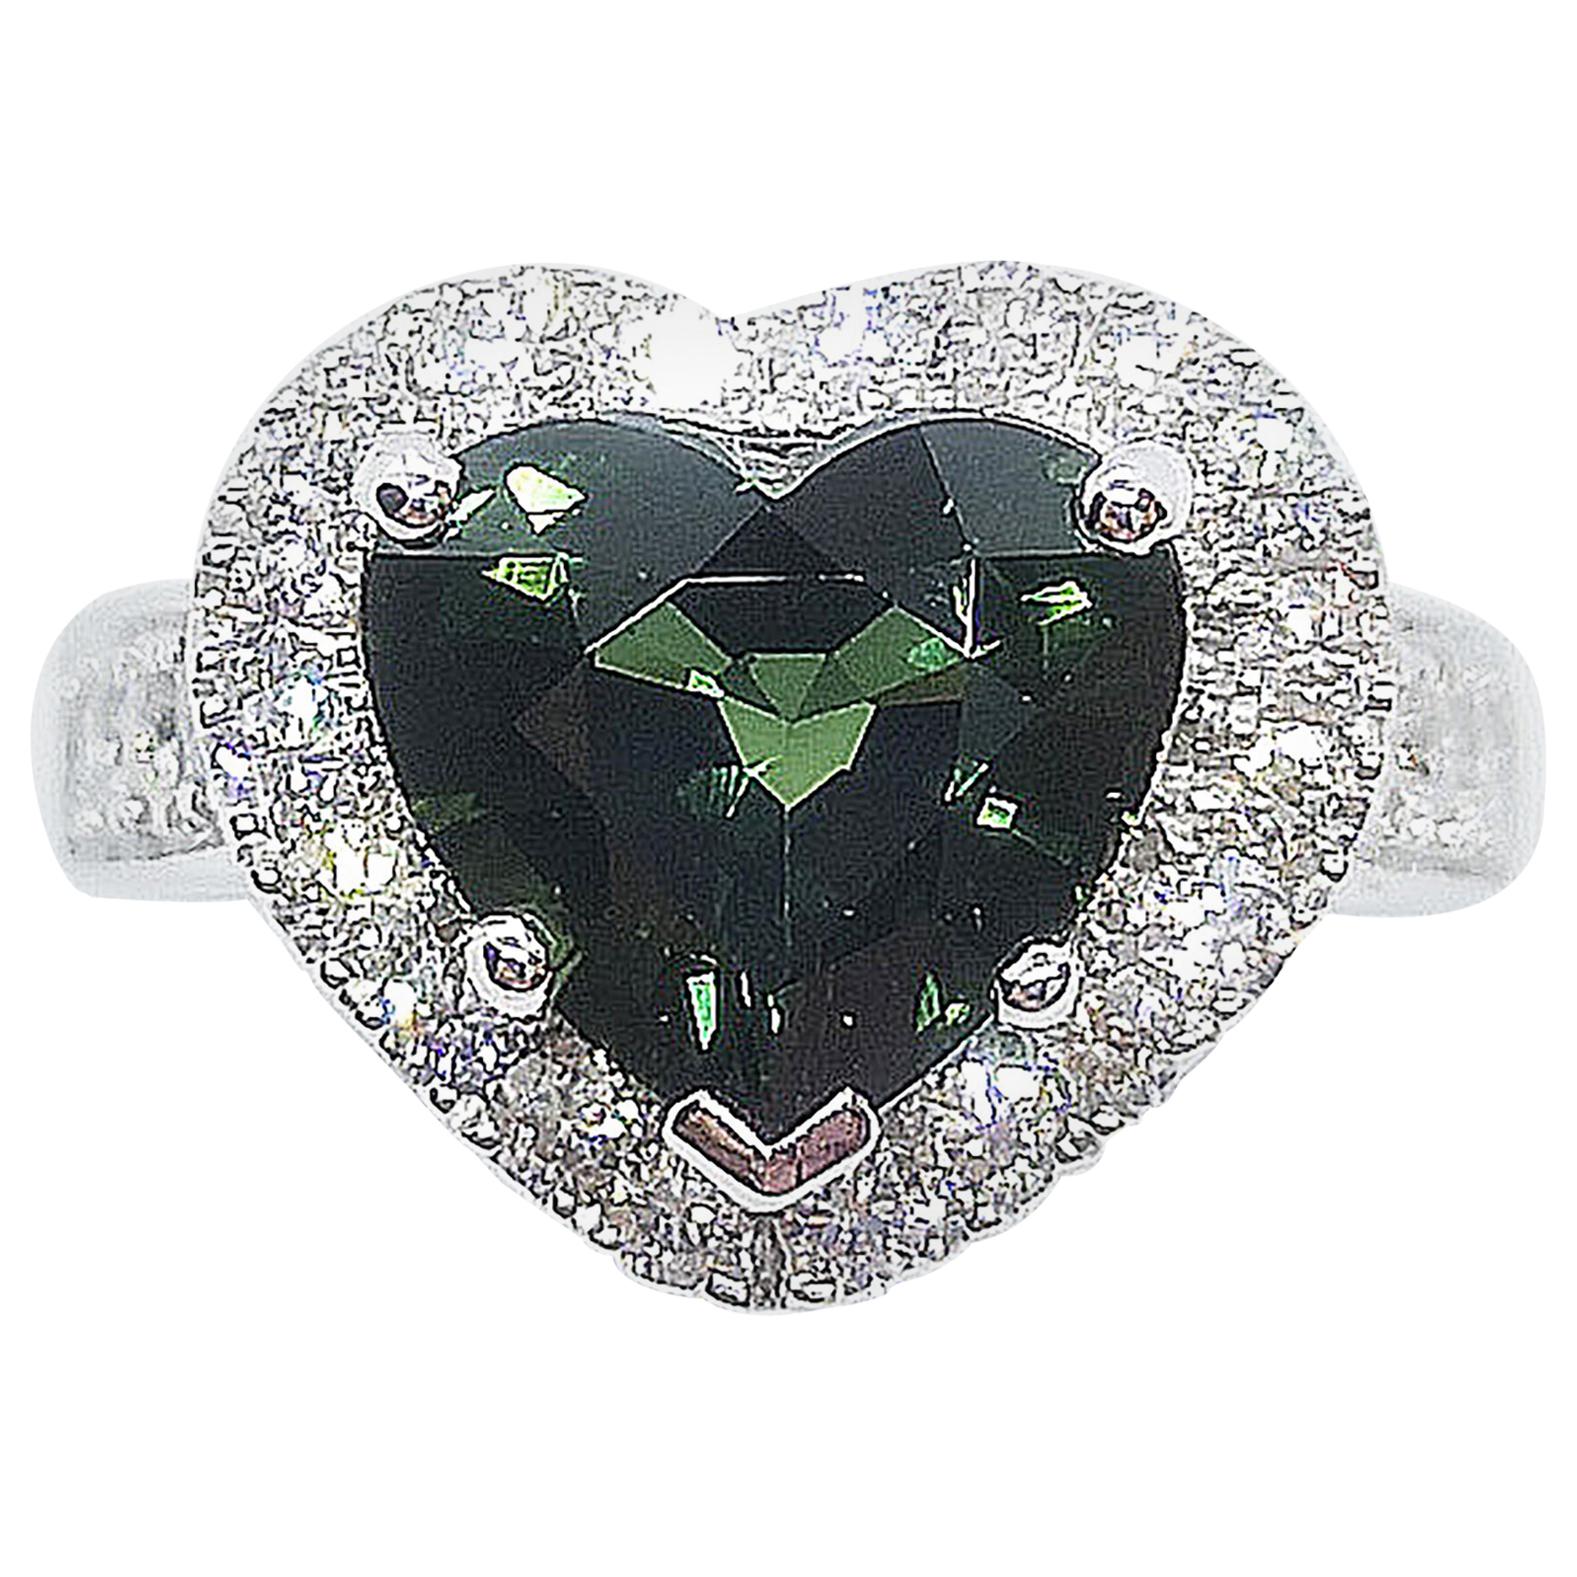 Bague en or blanc 18 carats sertie d'un saphir vert en forme de cœur et de diamant